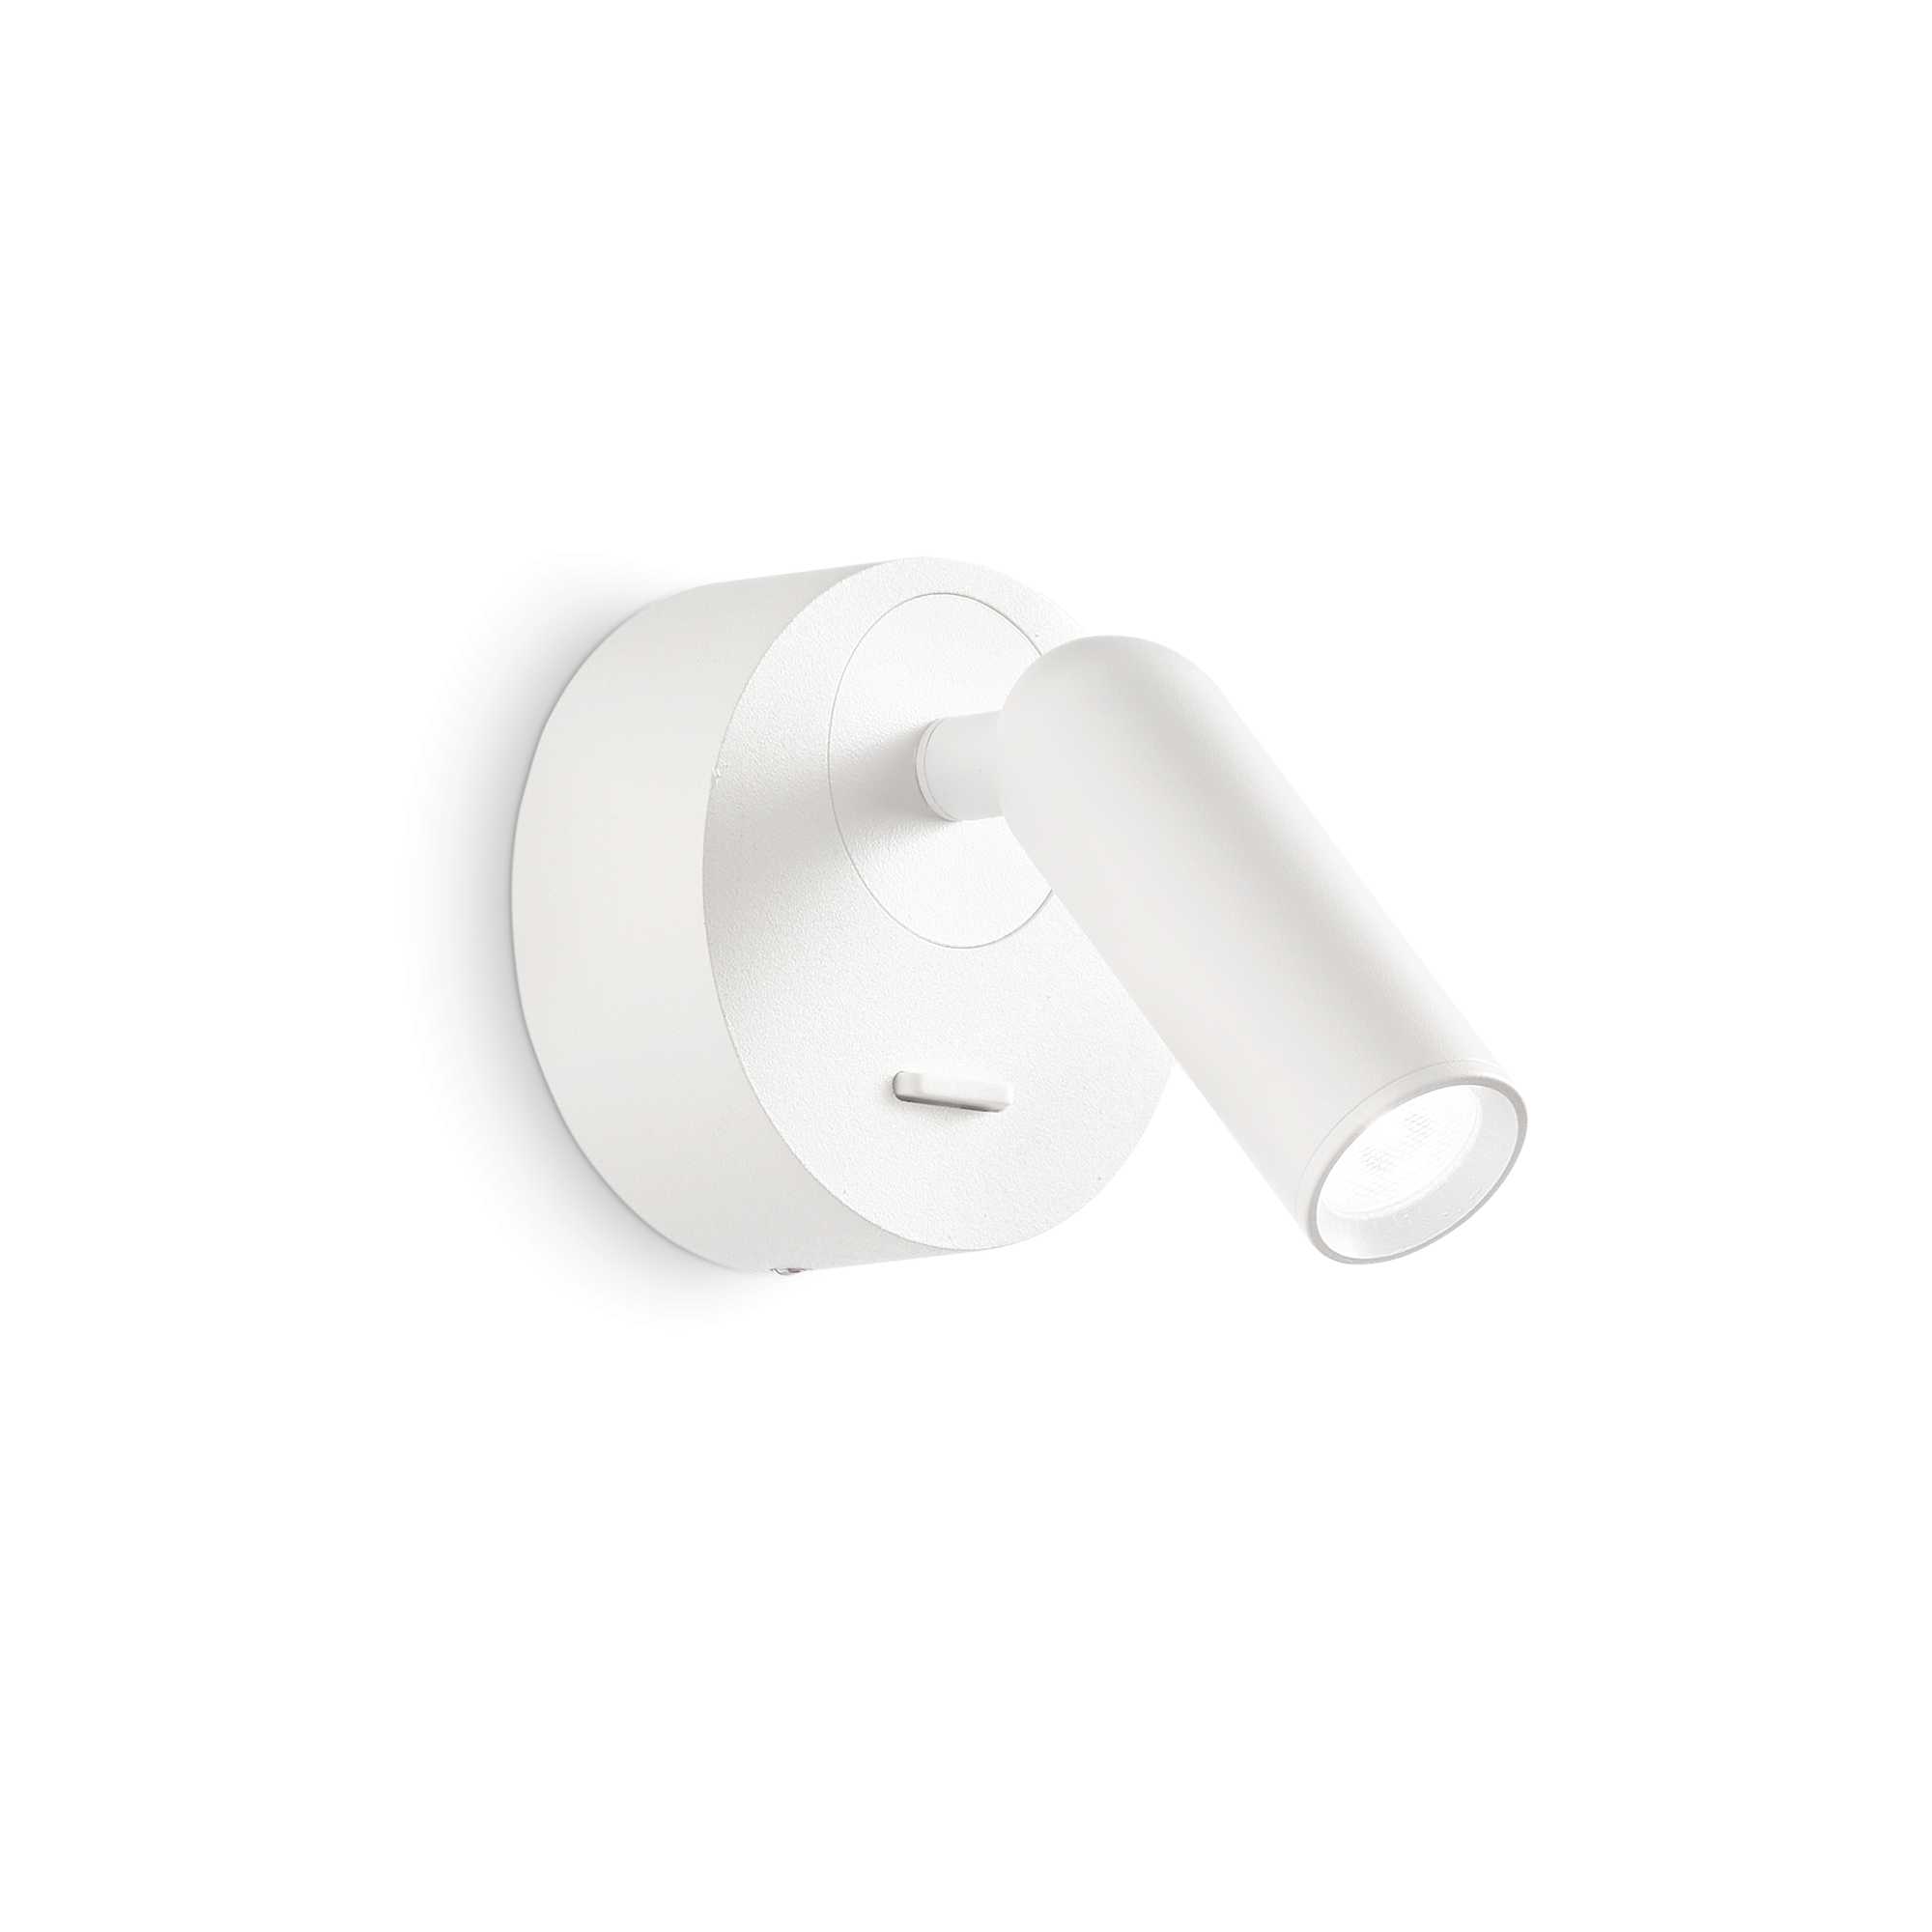 AD hotelska oprema Zidna lampa Bean ap (okrugla)- Bijele boje slika proizvoda